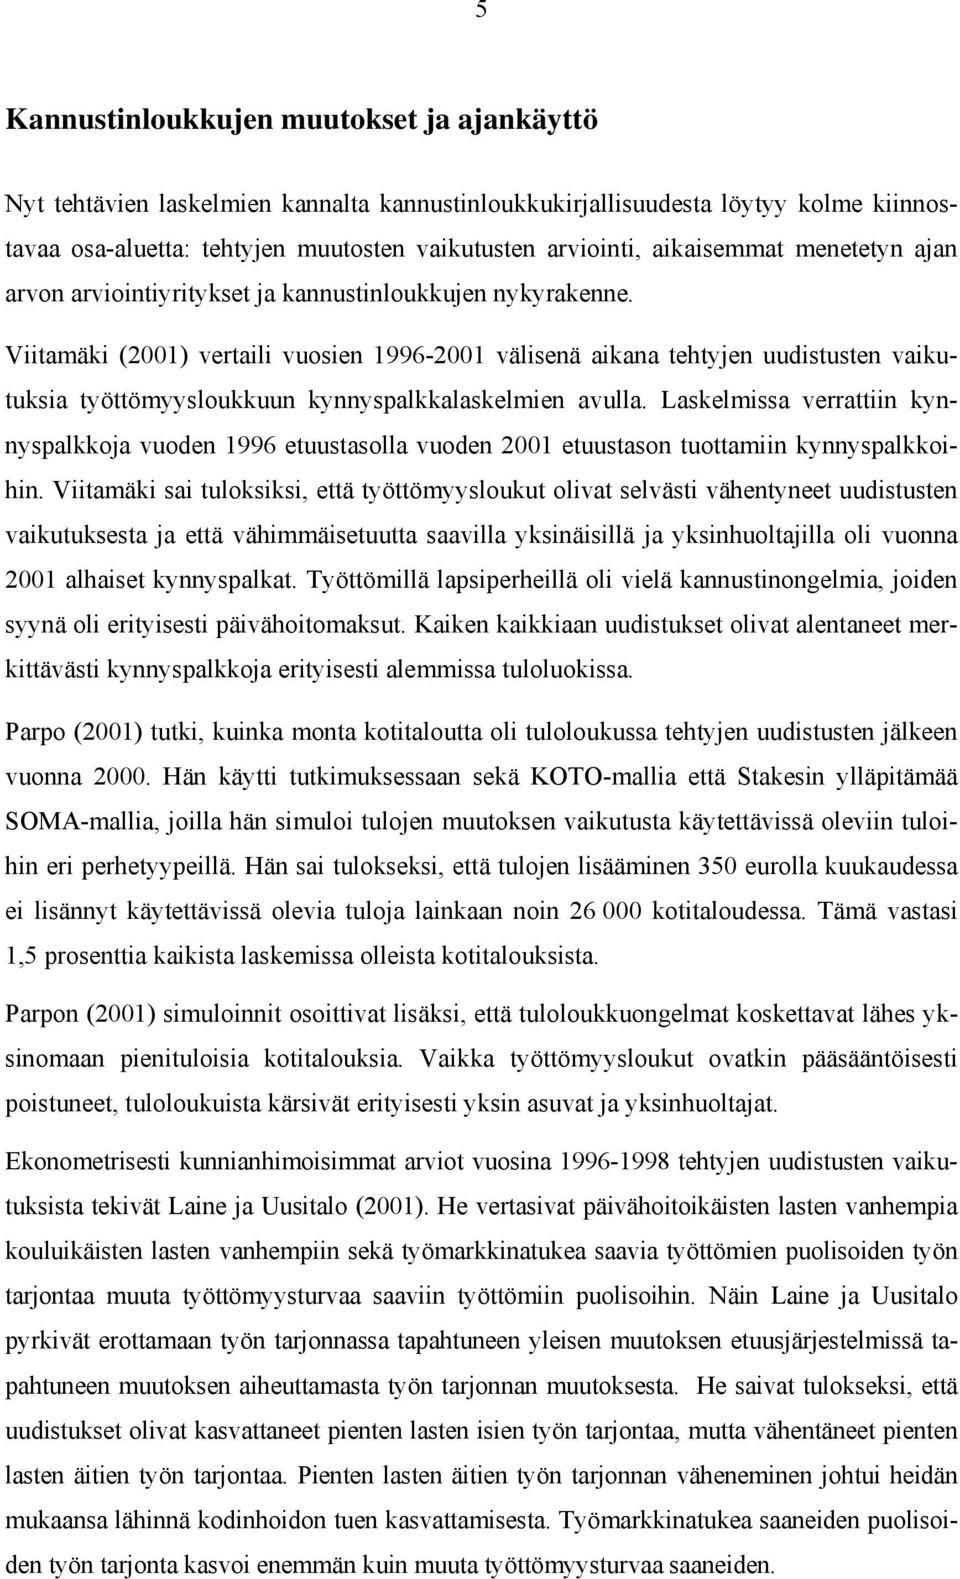 Viitamäki (2001) vertaili vuosien 1996-2001 välisenä aikana tehtyjen uudistusten vaikutuksia työttömyysloukkuun kynnyspalkkalaskelmien avulla.